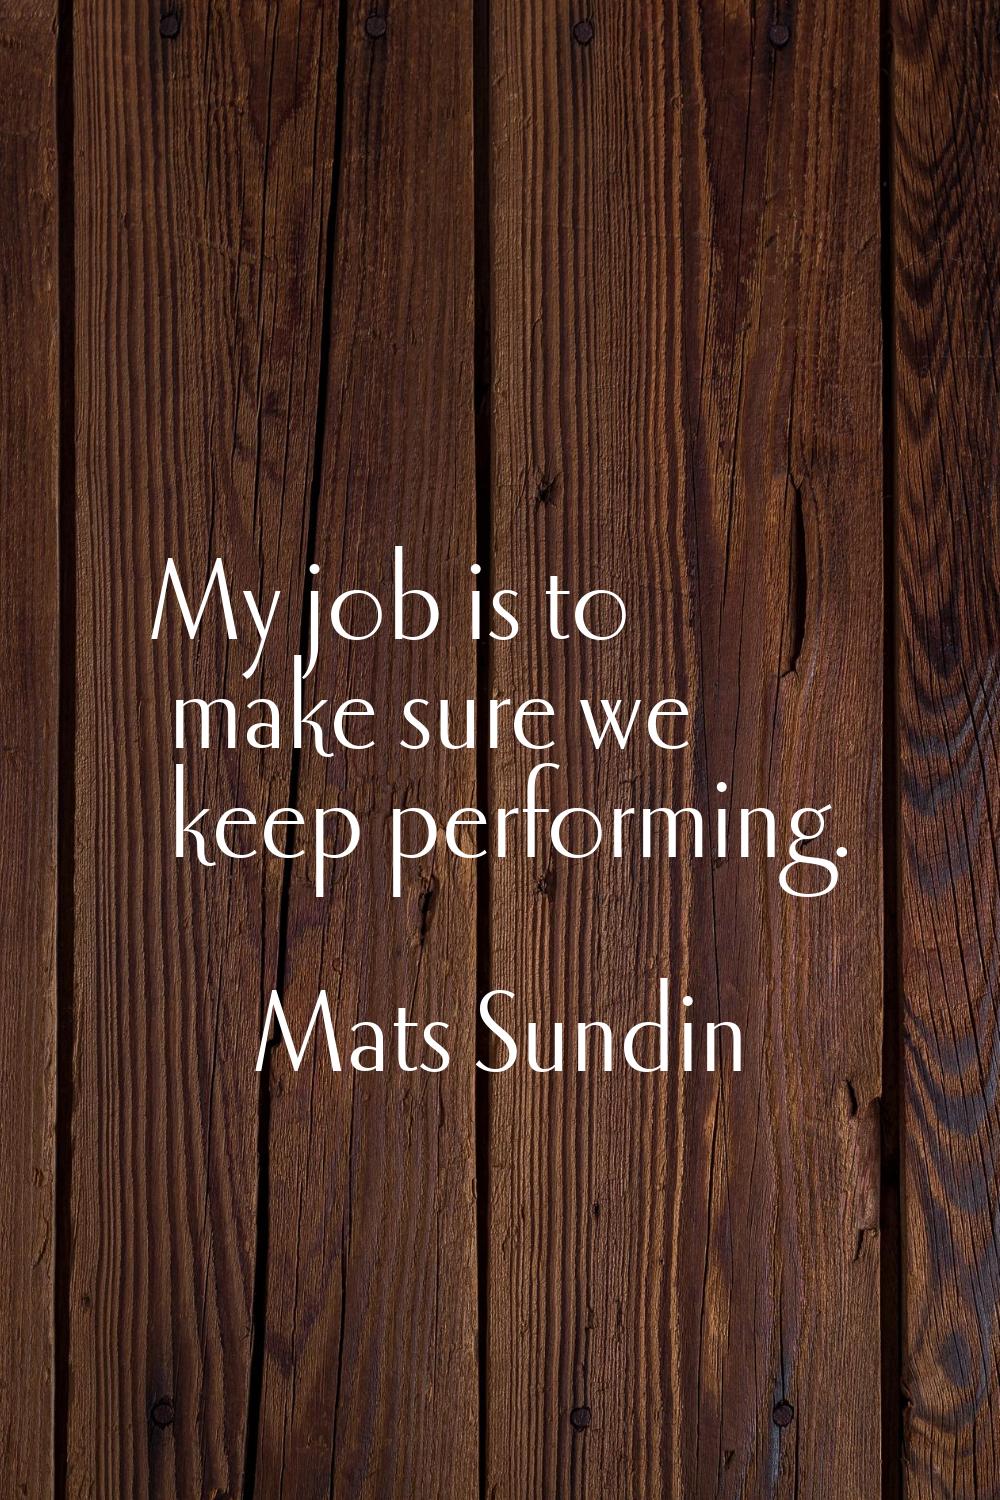 My job is to make sure we keep performing.